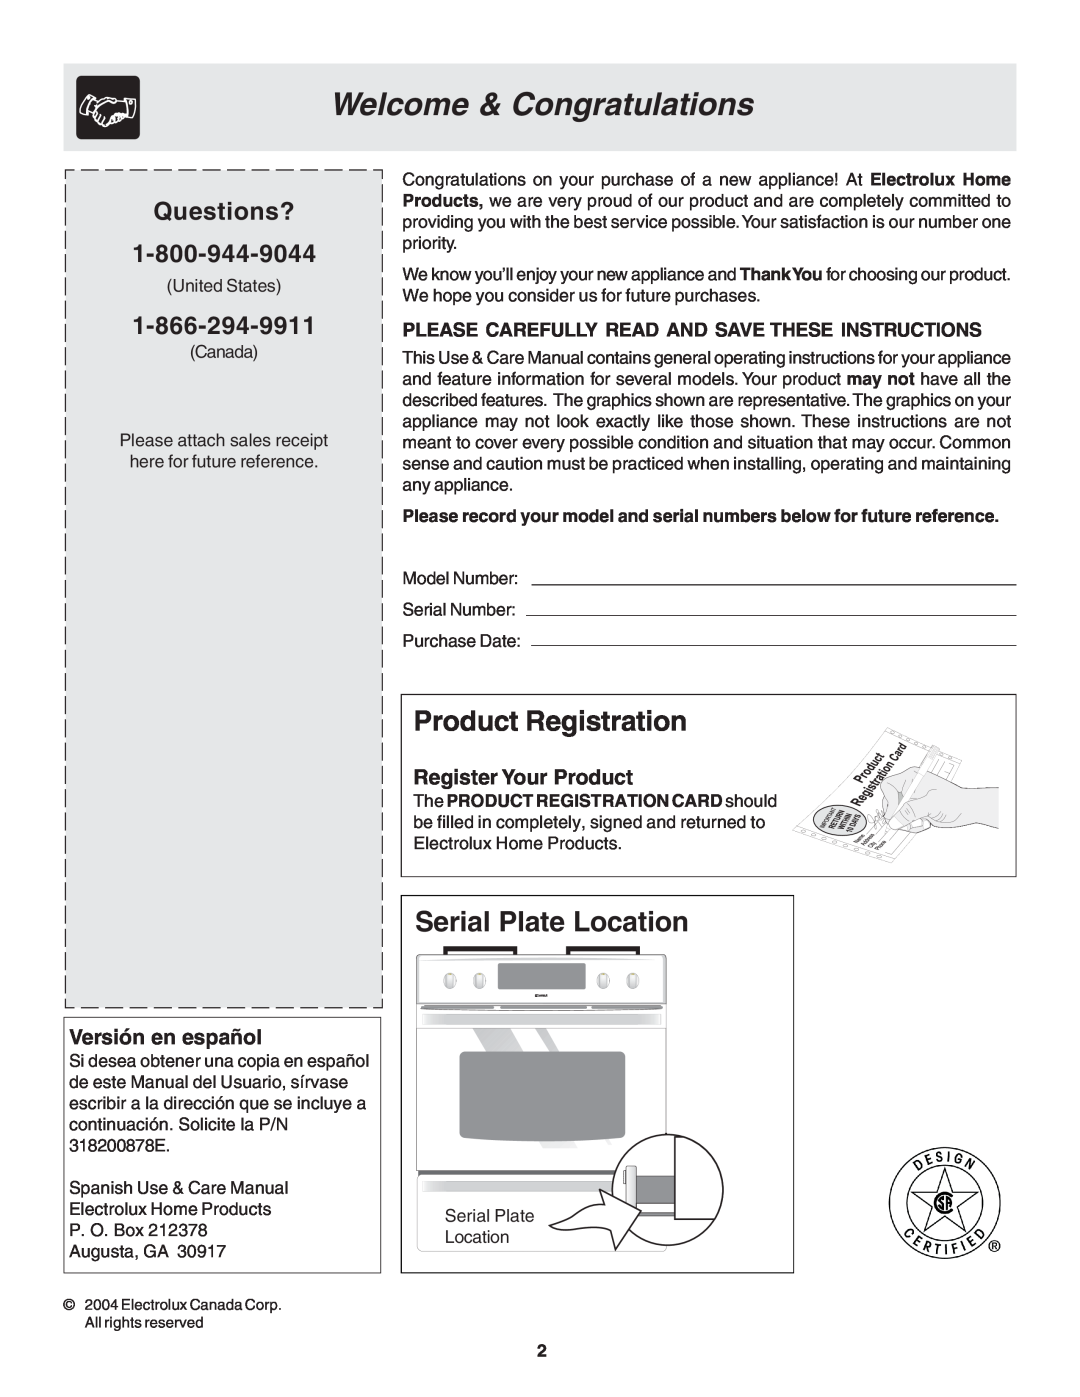 Frigidaire 318200879 manual Welcome & Congratulations, Product Registration, Serial Plate Location, Versión en español 